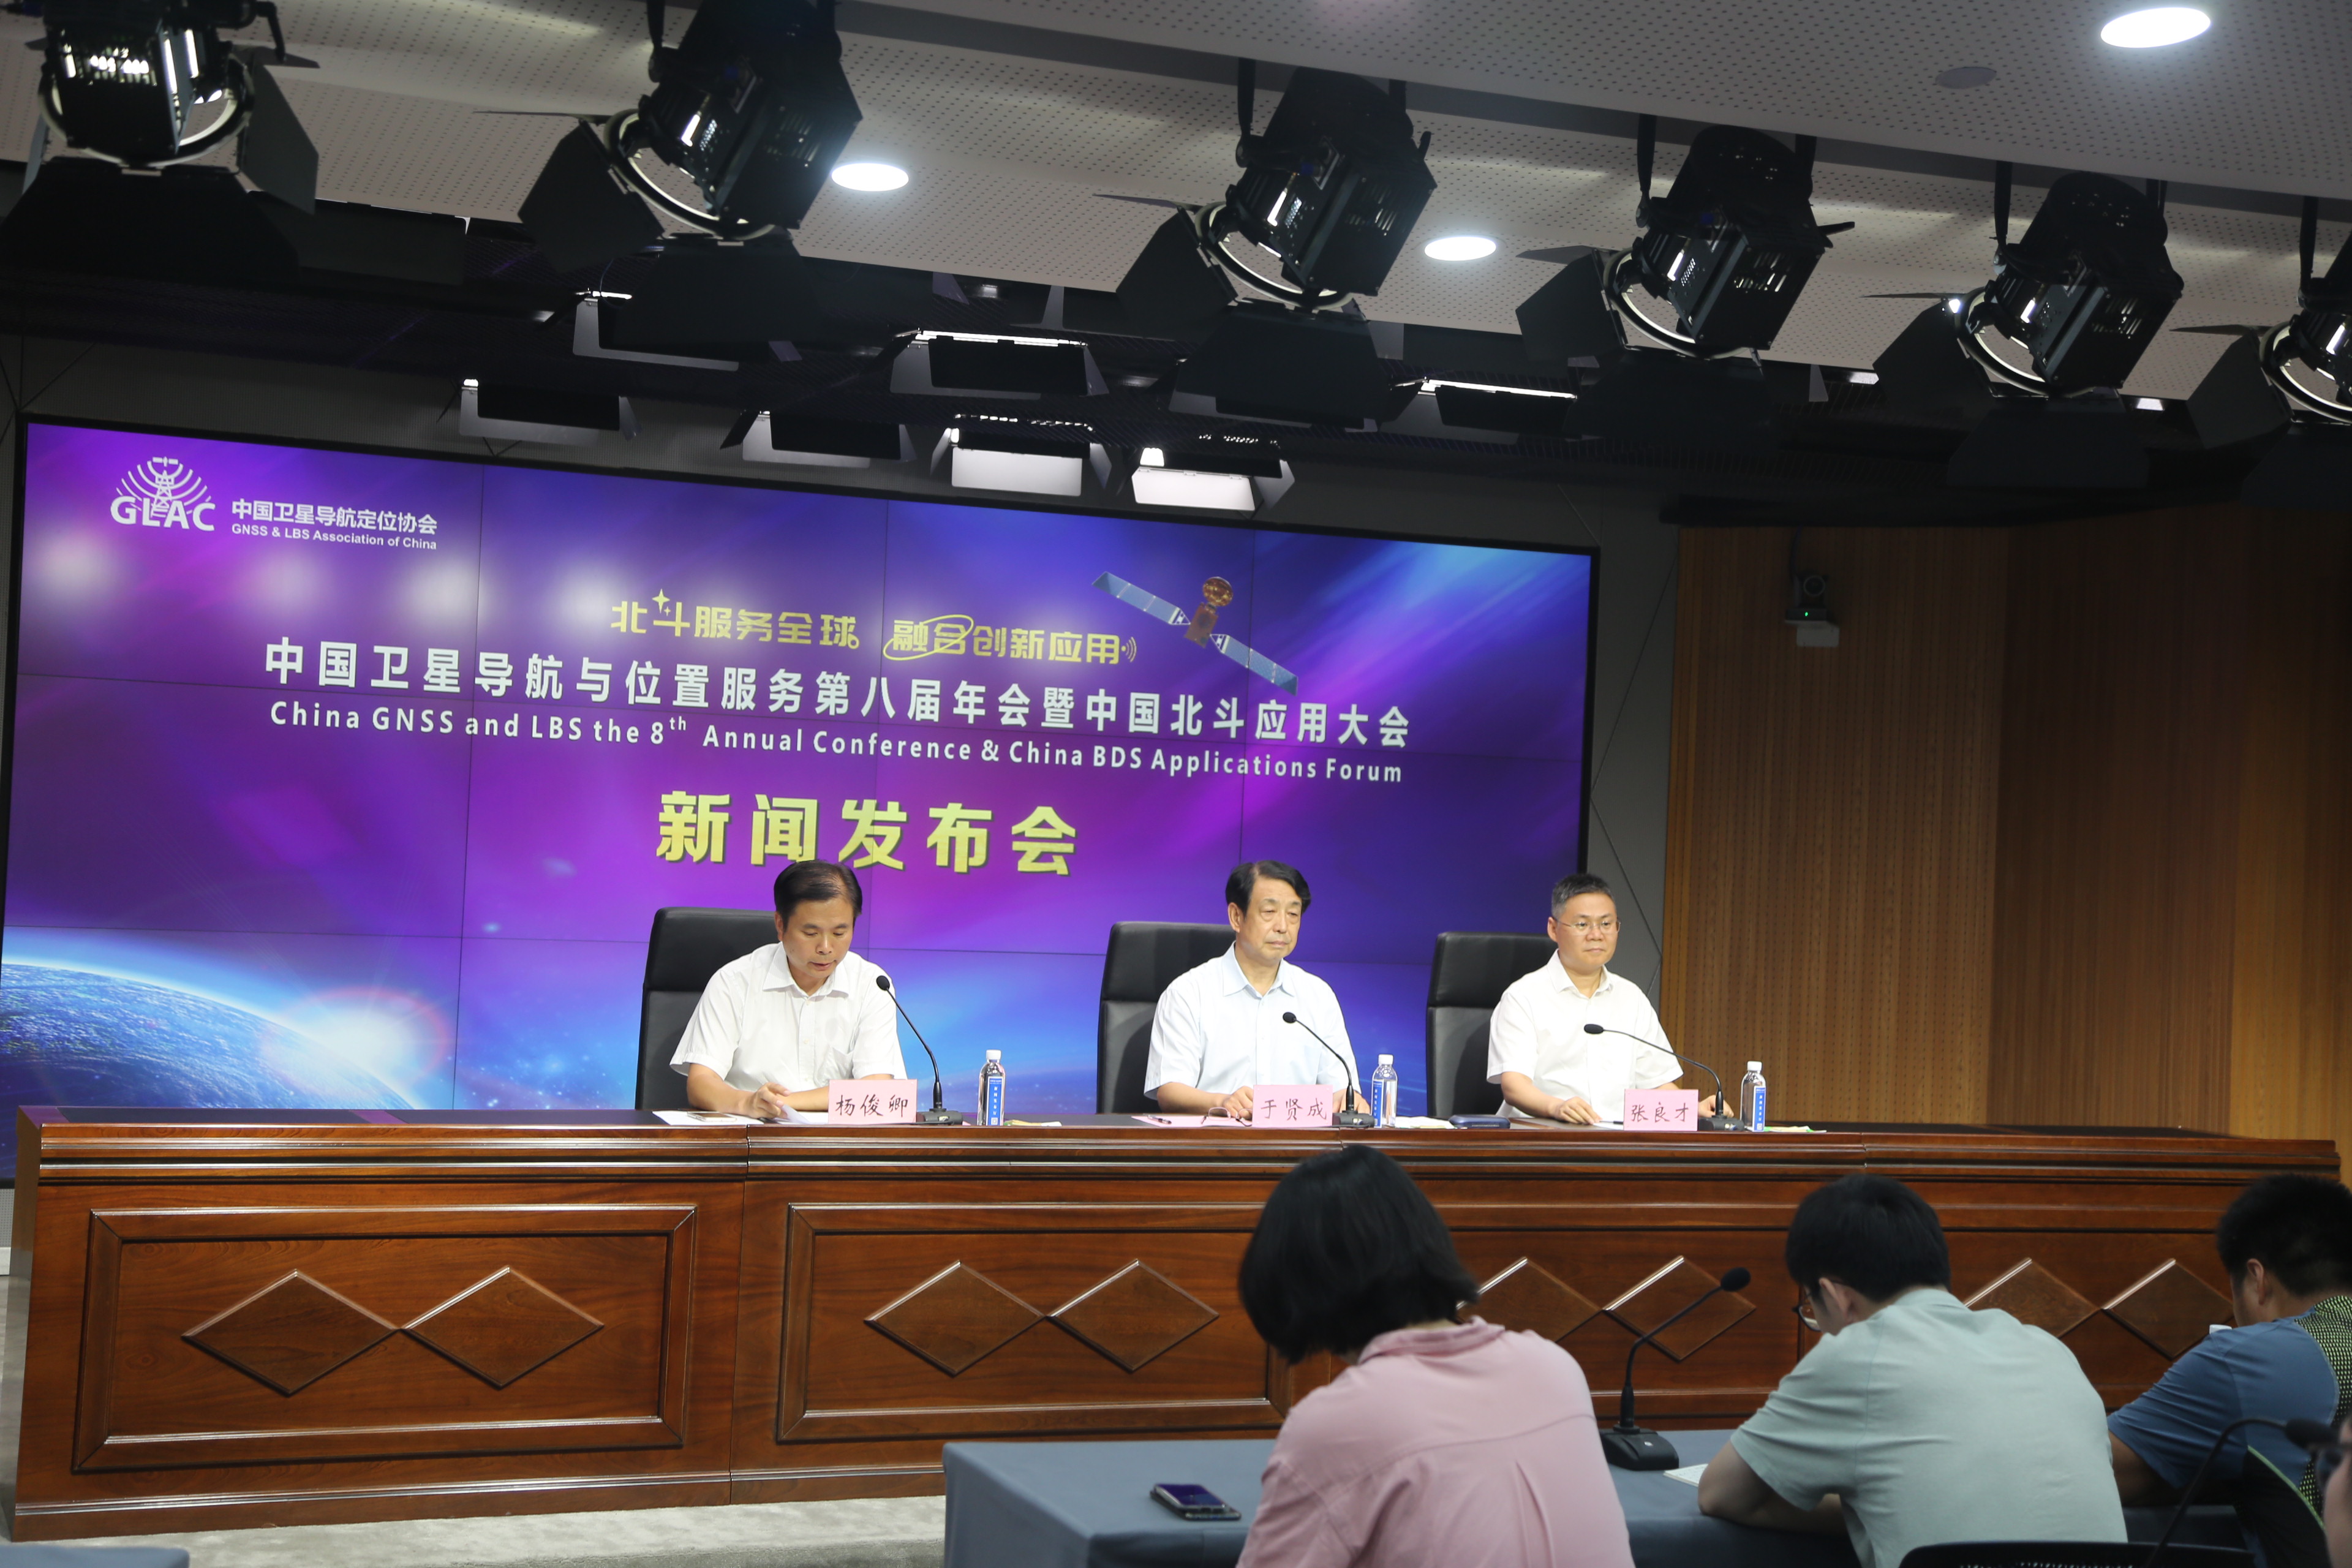 中国卫星导航与位置服务第八届年会暨中国北斗应用大会9月在郑州召开